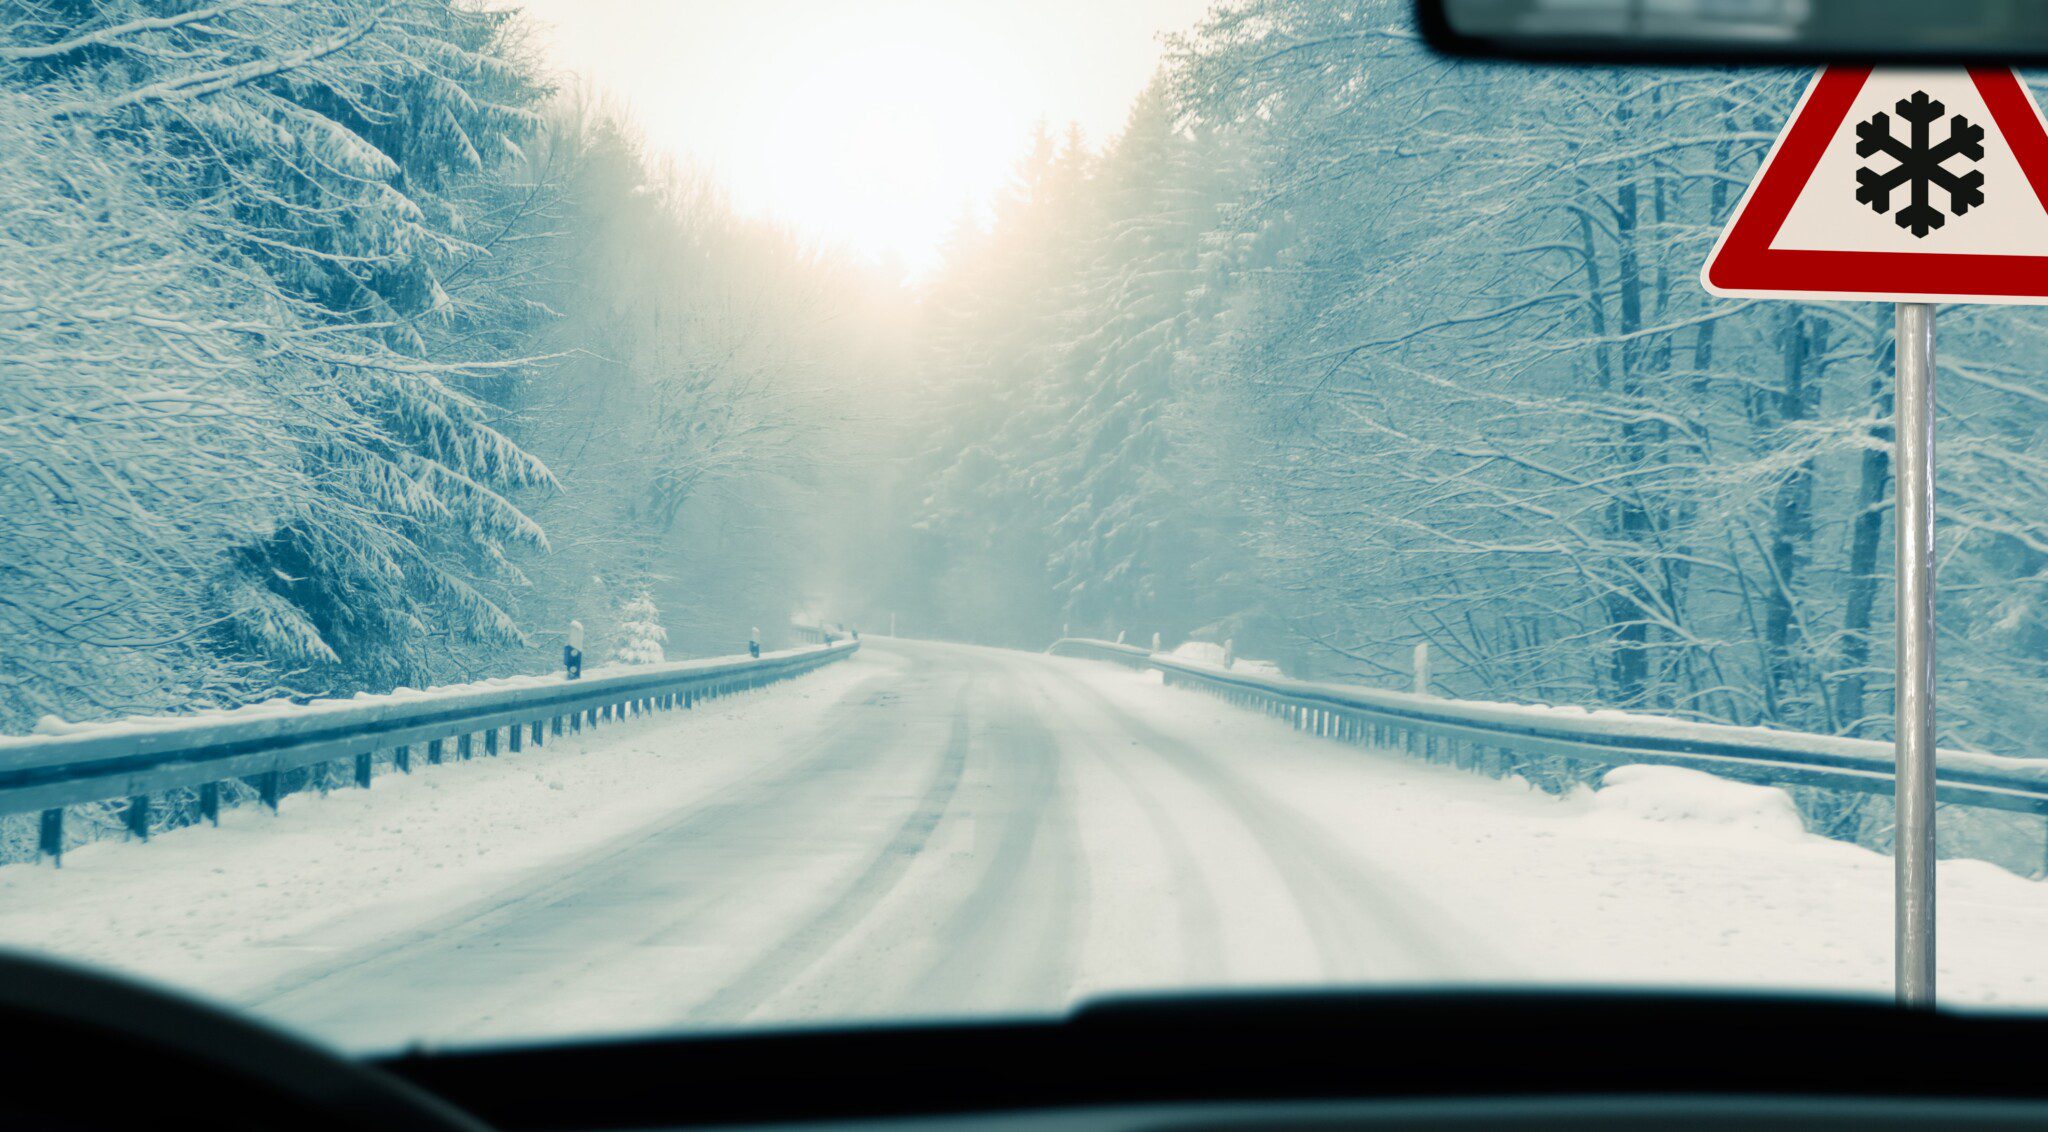 conducir con nieve manejo